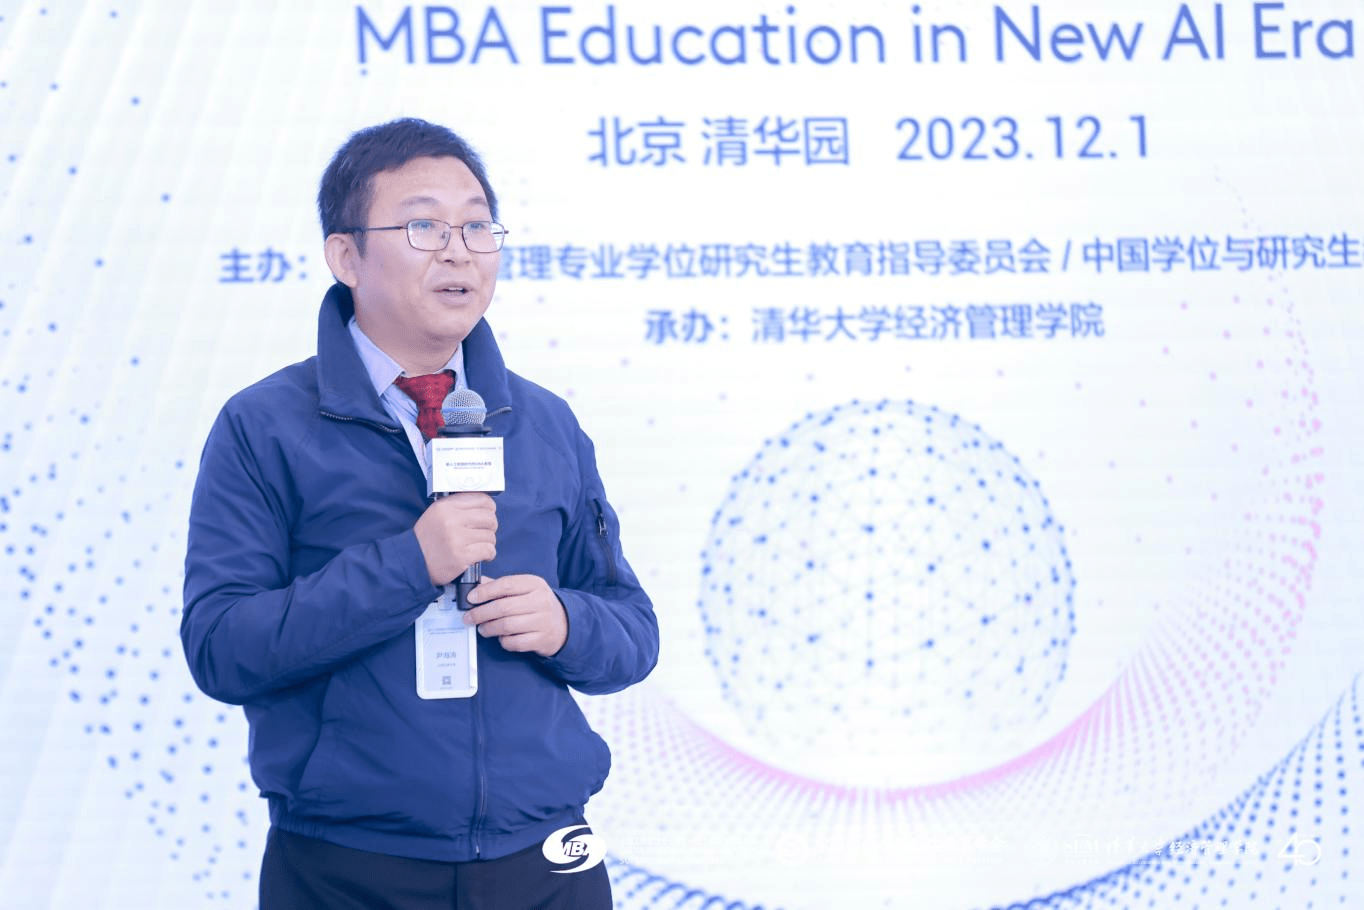 “新人工智能时代的MBA教育” 研讨会在京隆重举行